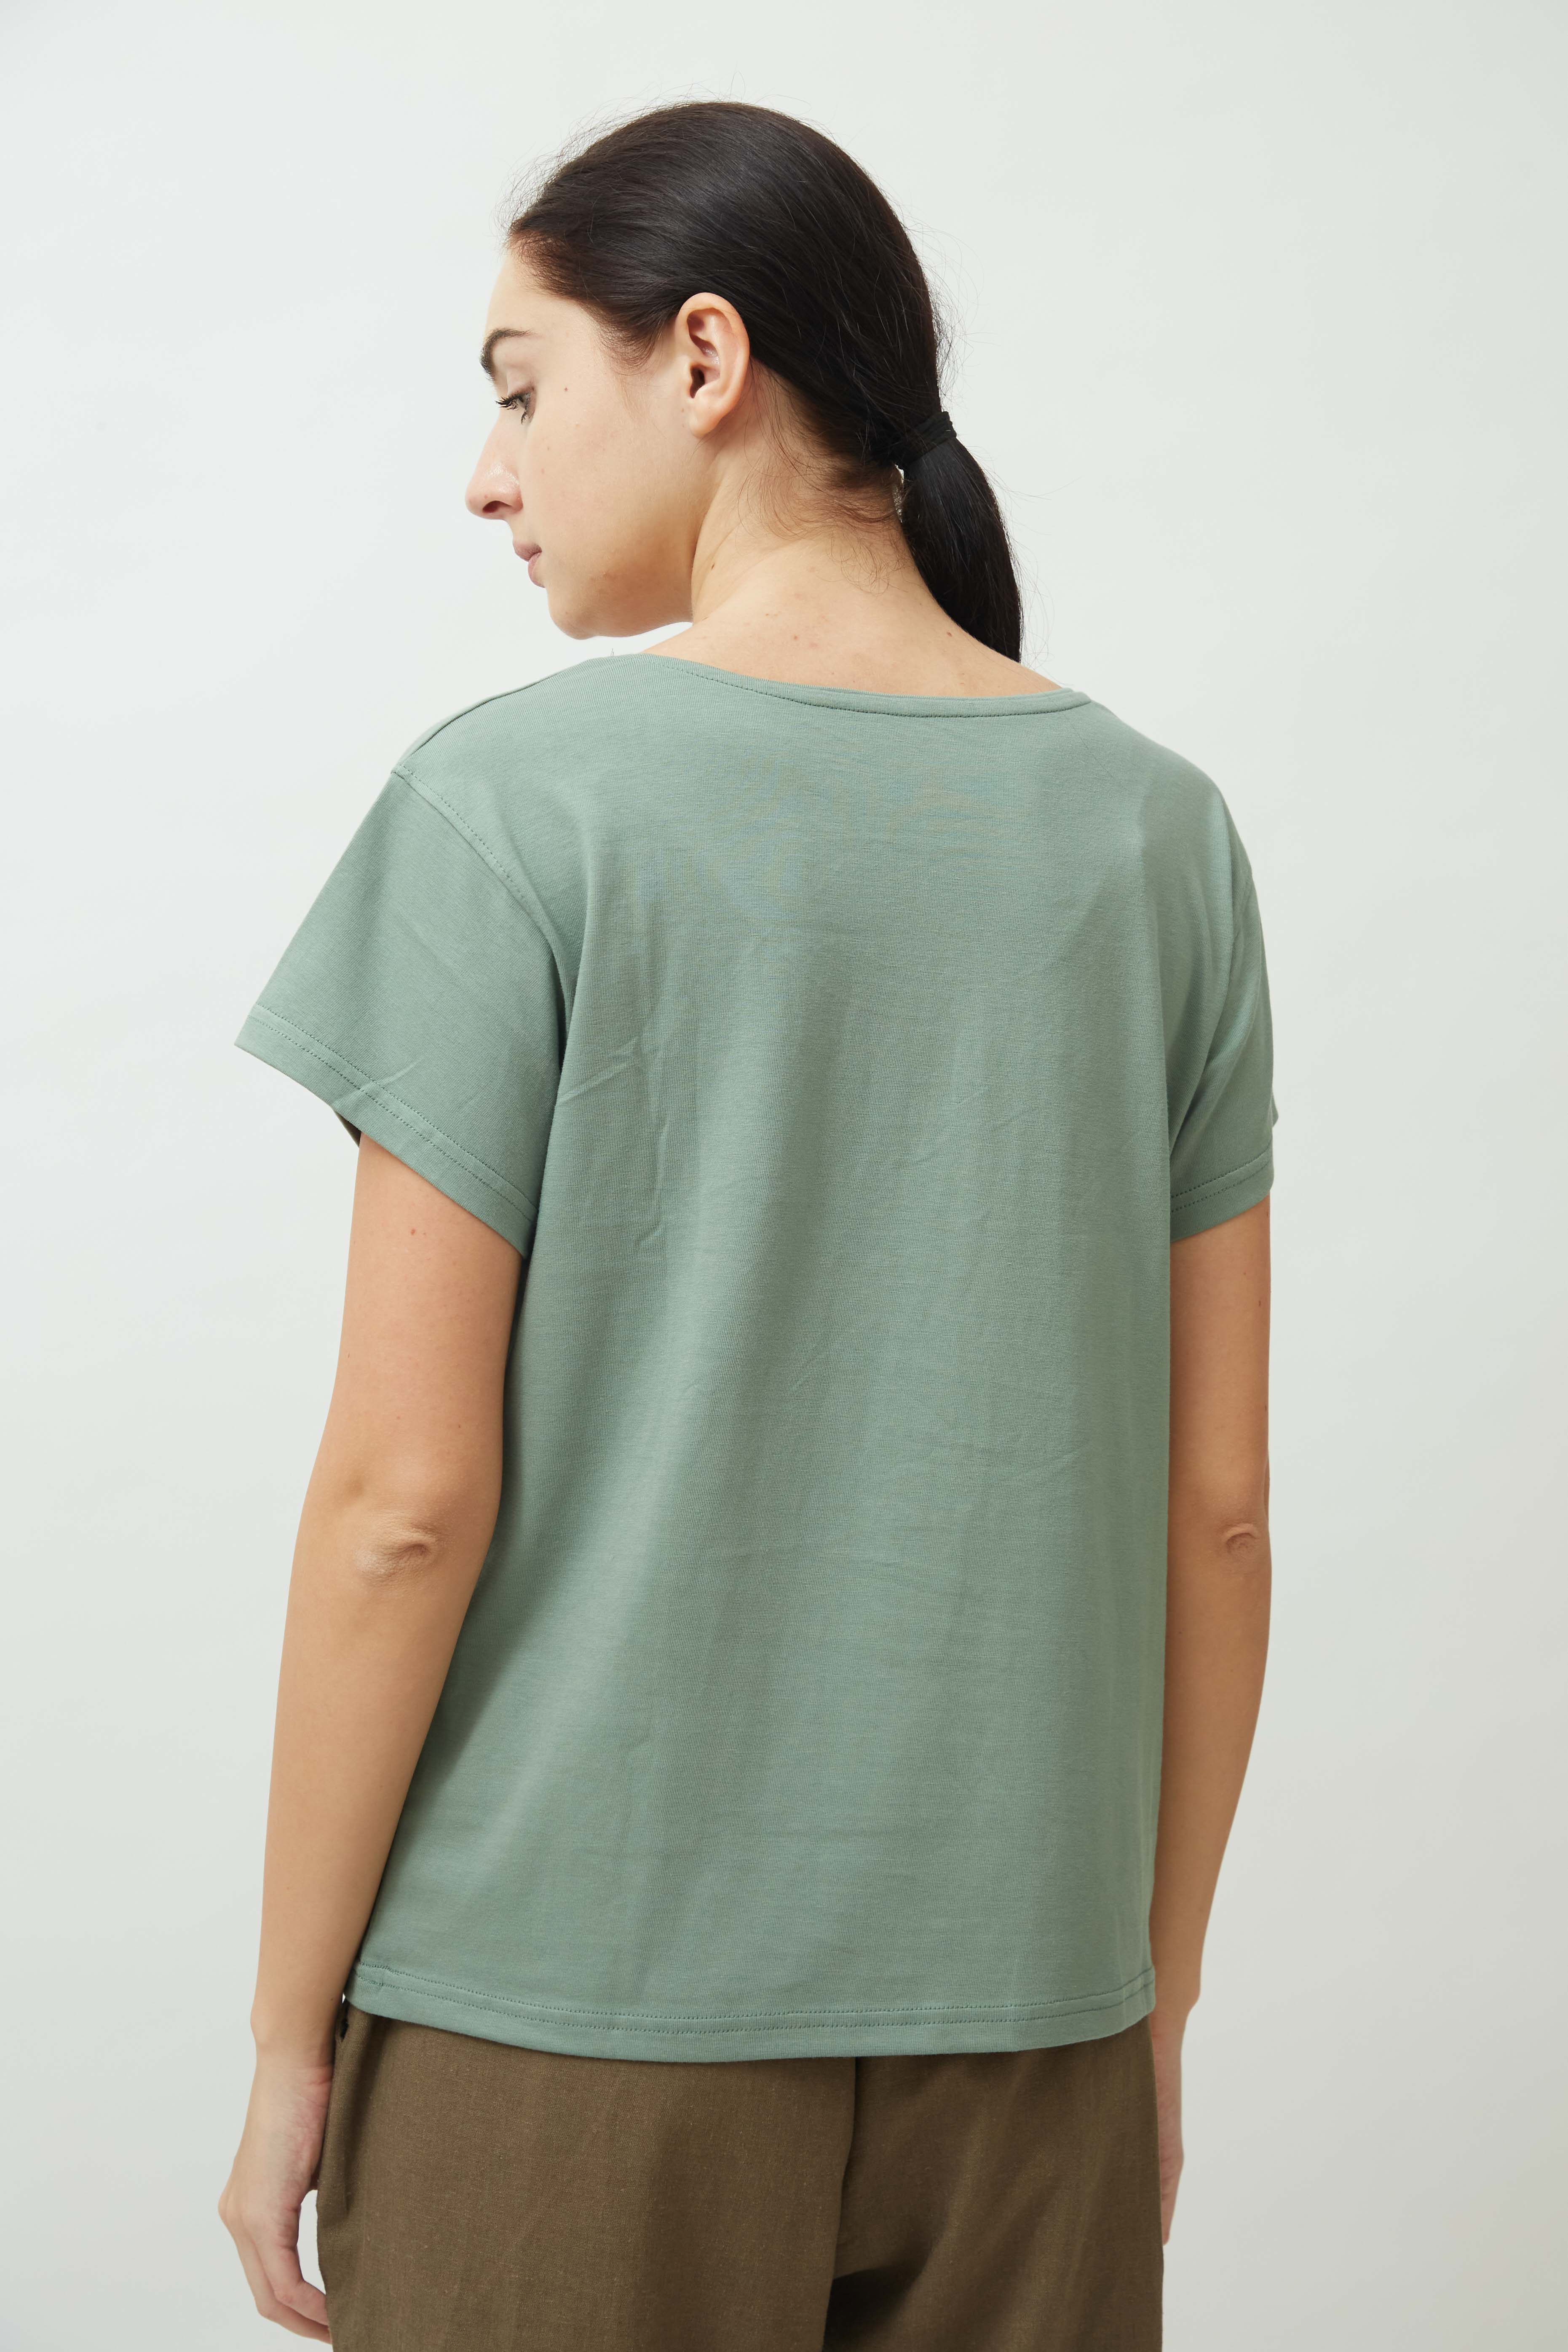 Ola Parabola T-Shirt > Sage Green